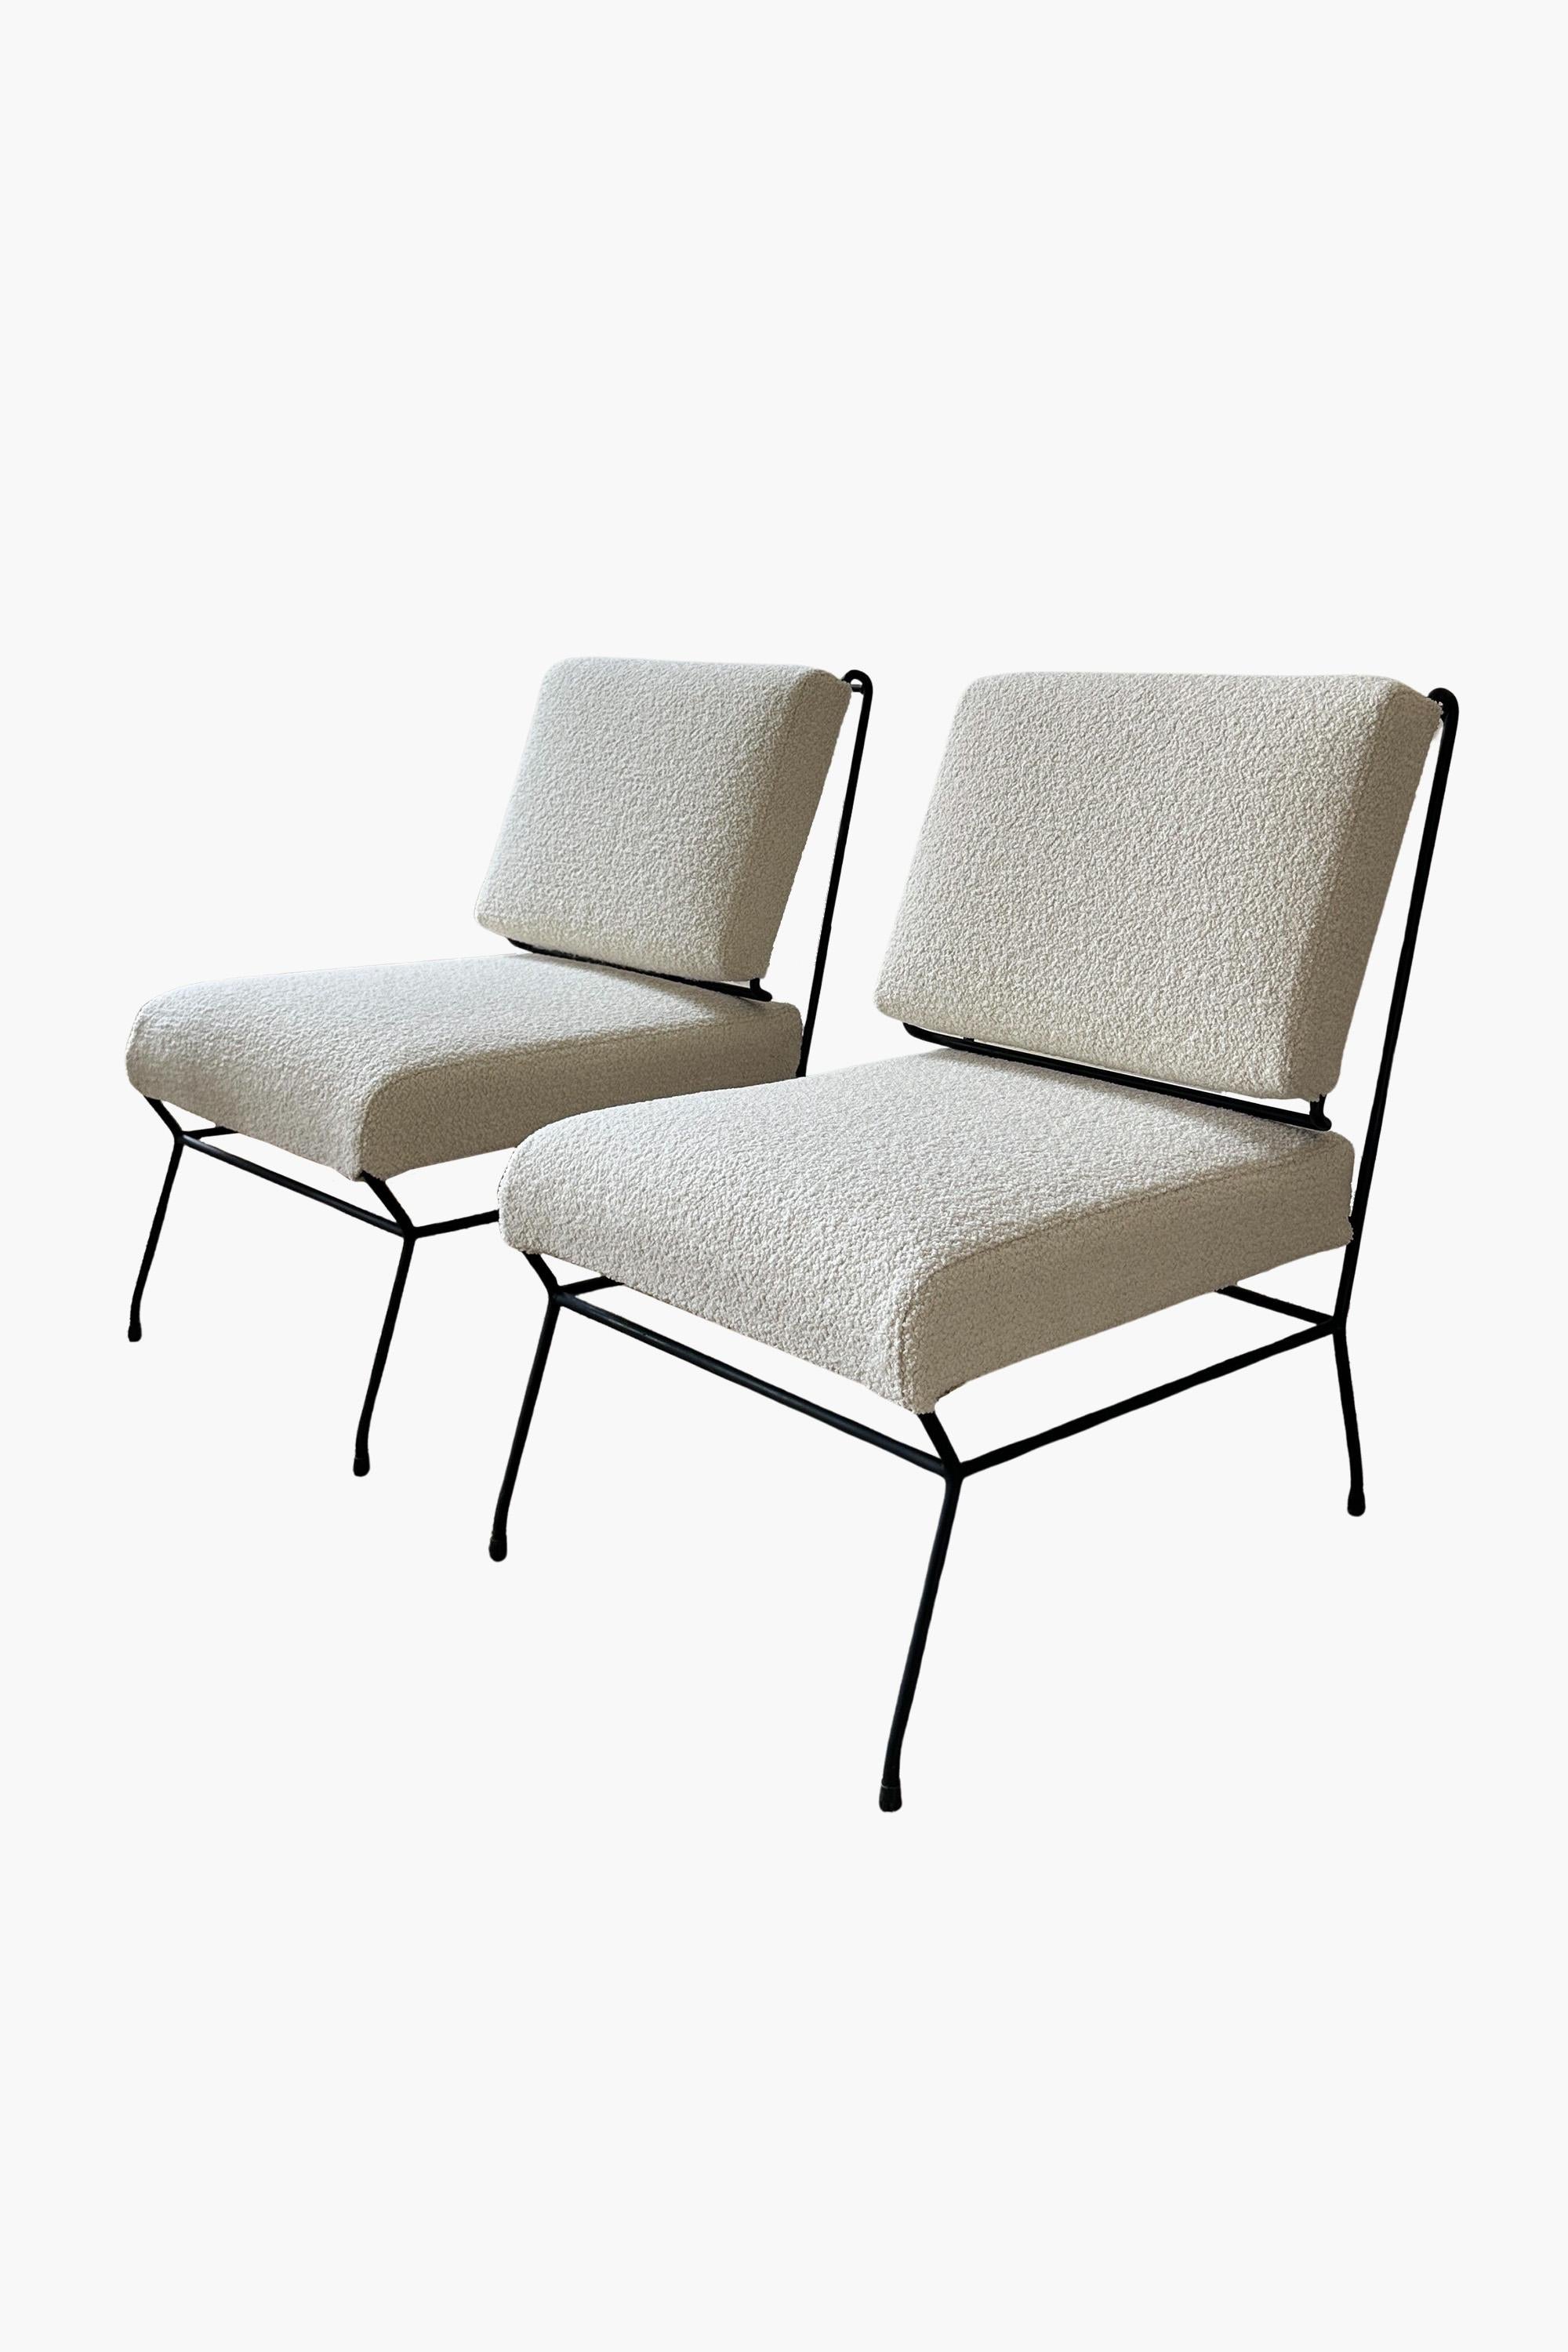 Paire de chaises basses rares de Gastone Rinaldi pour Rima

Une paire de chaises basses élégantes conçues par Gastone Rinaldi pour RIMA. Structure en tube d'acier laqué avec sangles en caoutchouc et rembourrage en mousse. Le cadre en acier forme un